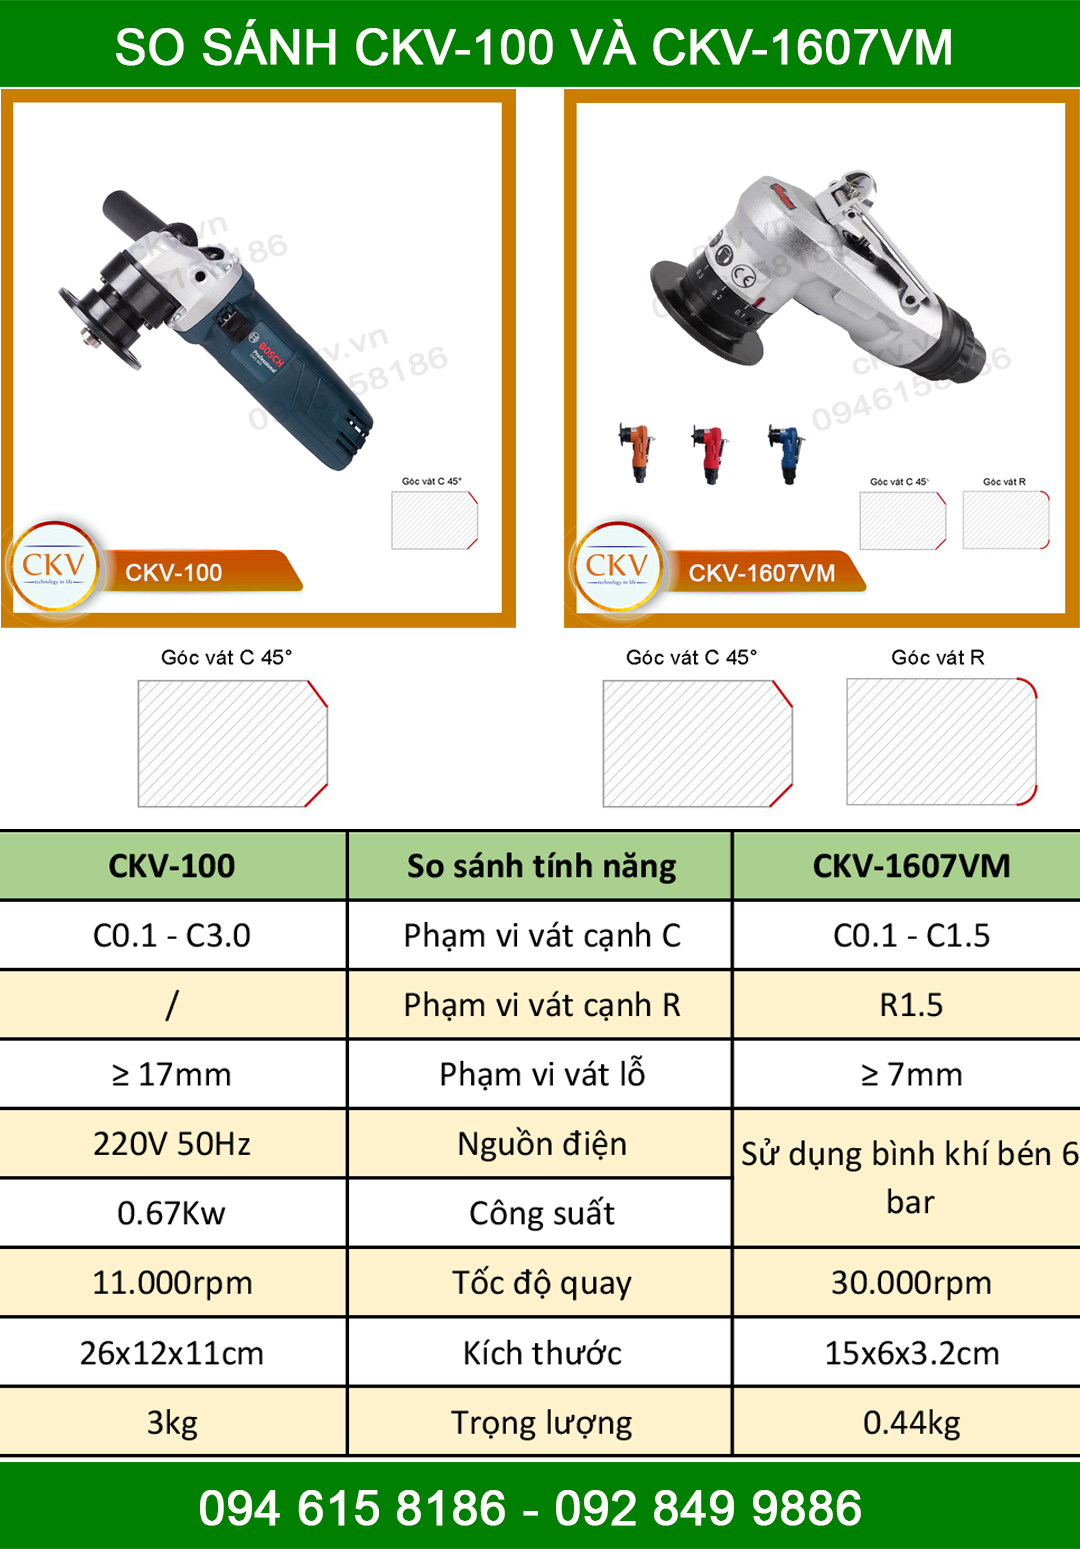 So sánh CKV-100 và CKV-1607VM